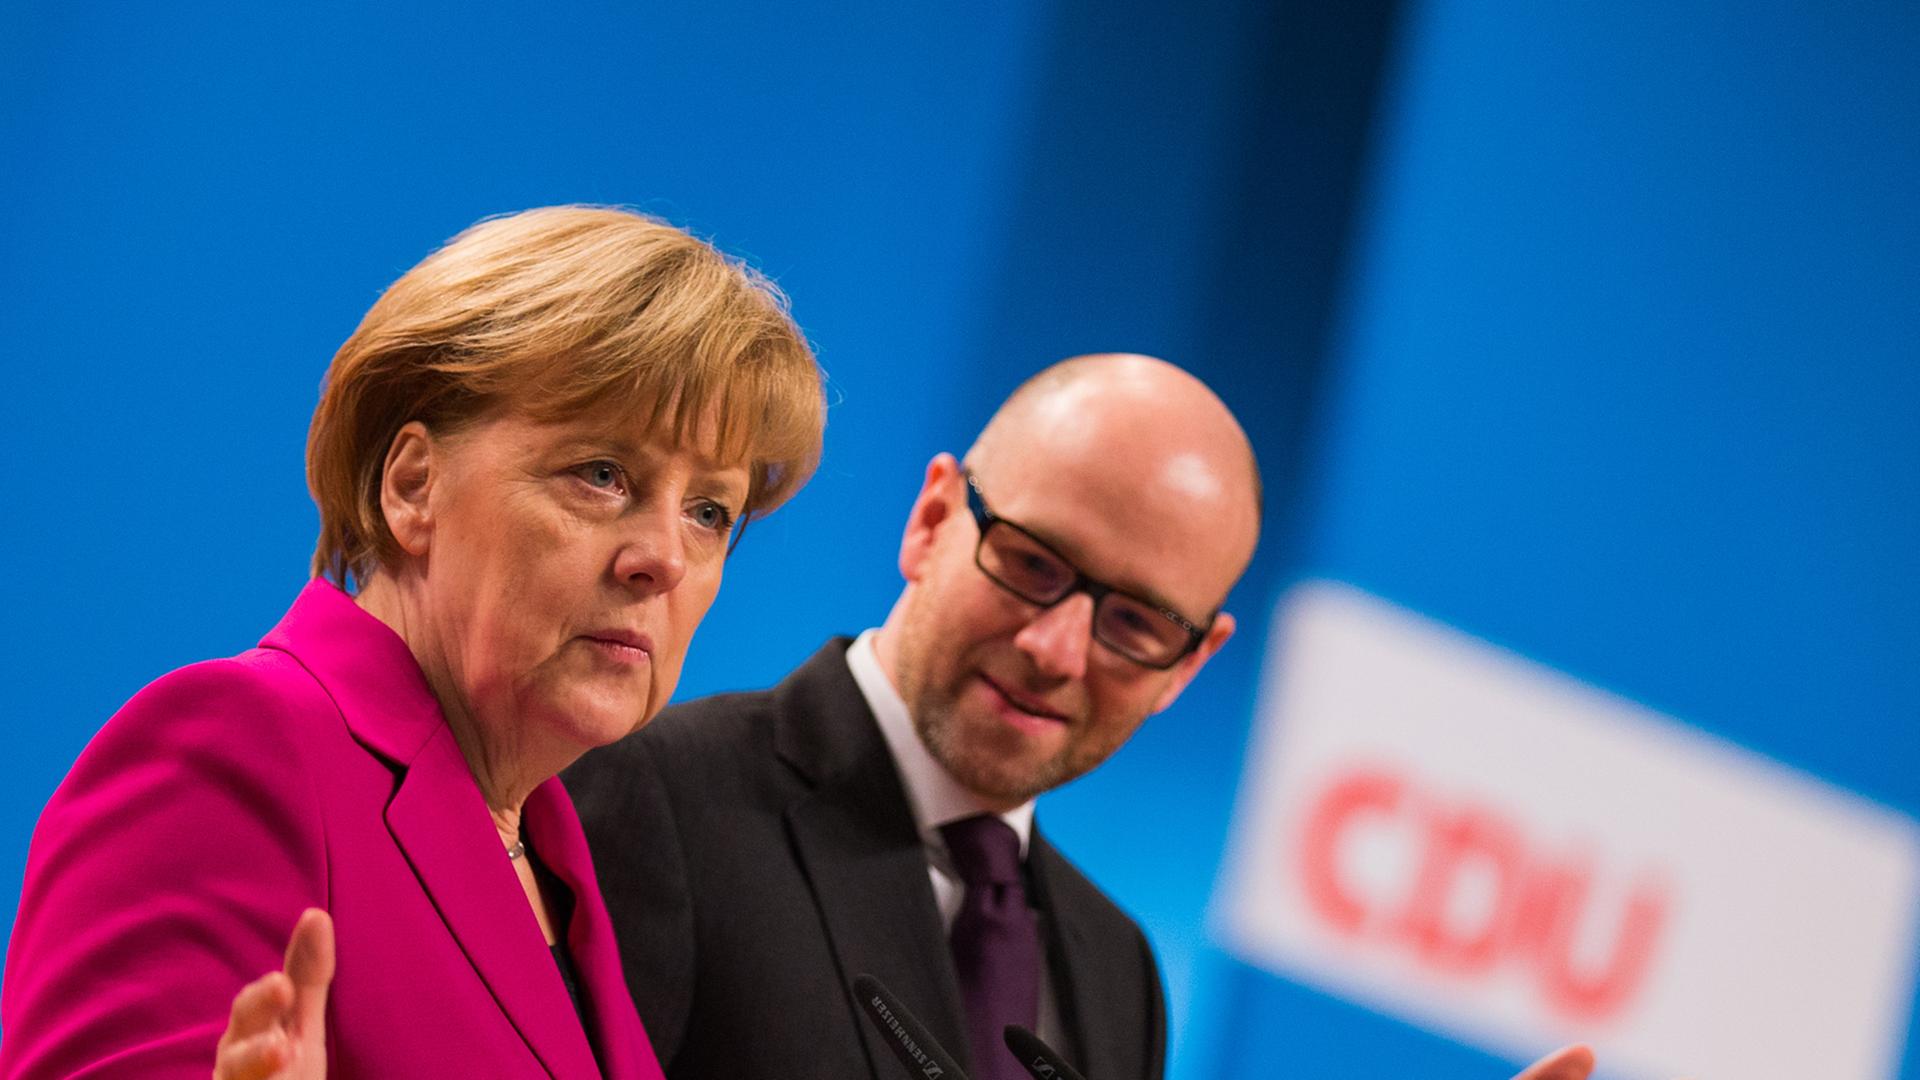 Bundeskanzlerin Angela Merkel und der Generalsekretär der CDU, Peter Tauber, inspizieren vor dem Bundesparteitag der CDU in Köln (Nordrhein-Westfalen) die Halle.